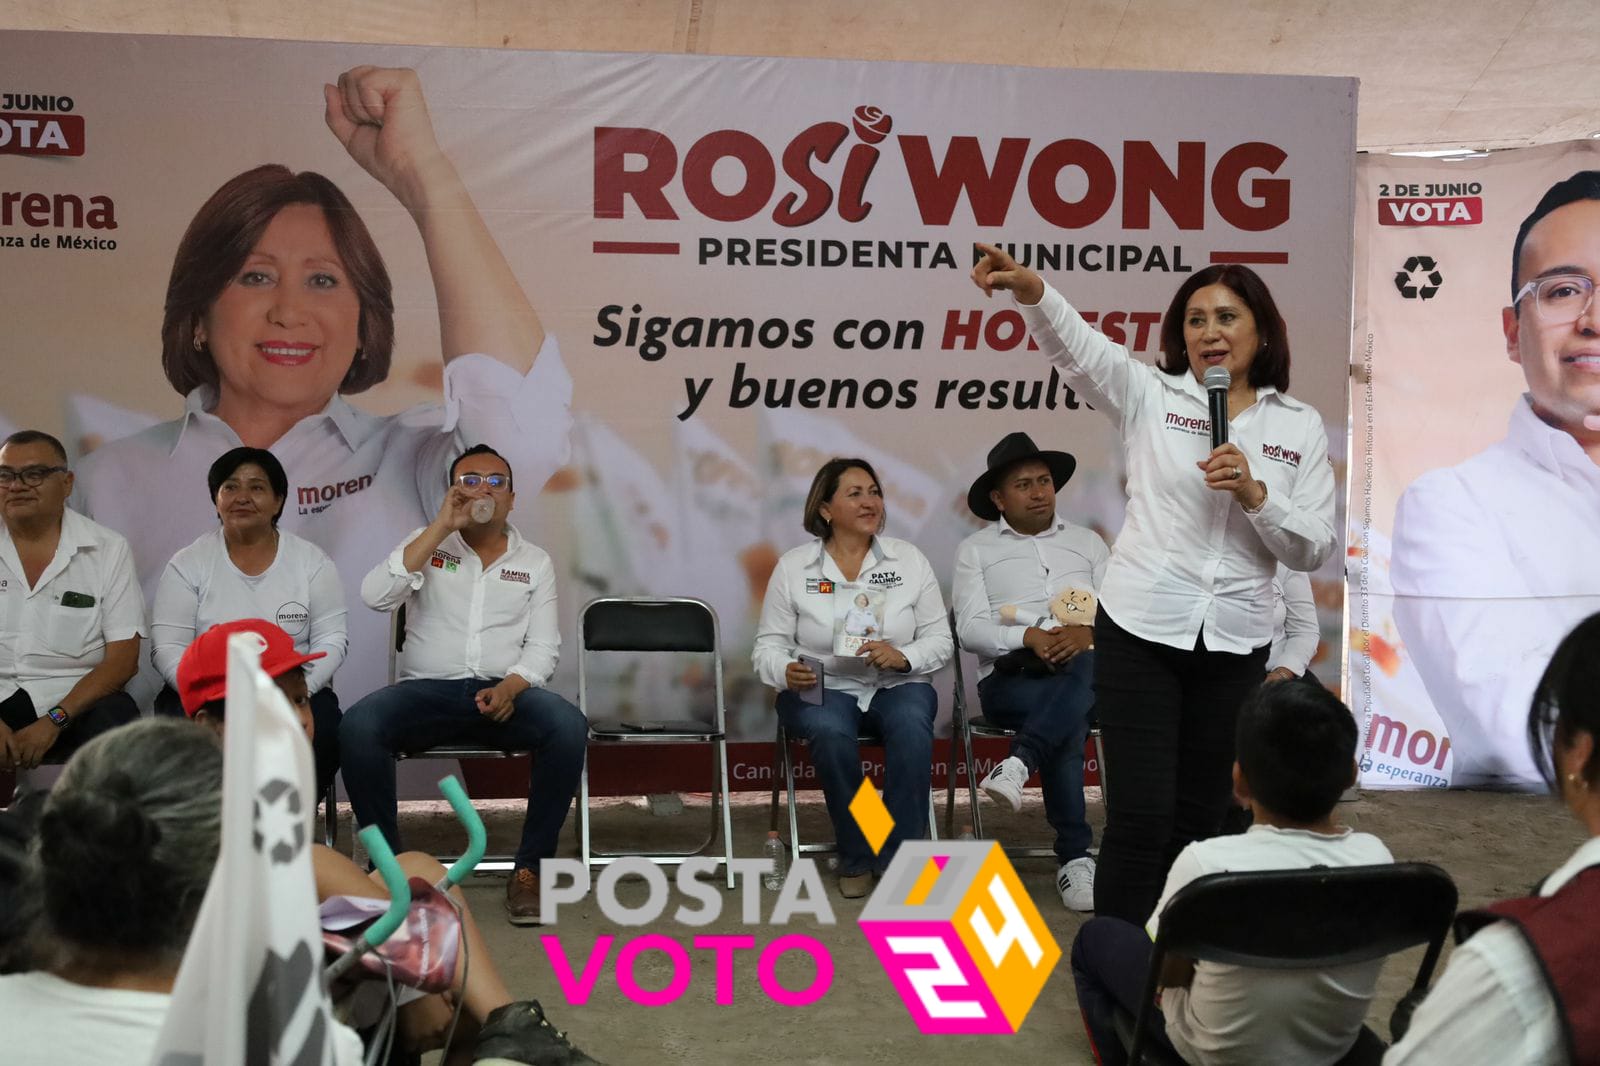 Rosi Wong ofreció mantener los programas sociales en Tecámac. Foto: Campaña de Rosi Wong